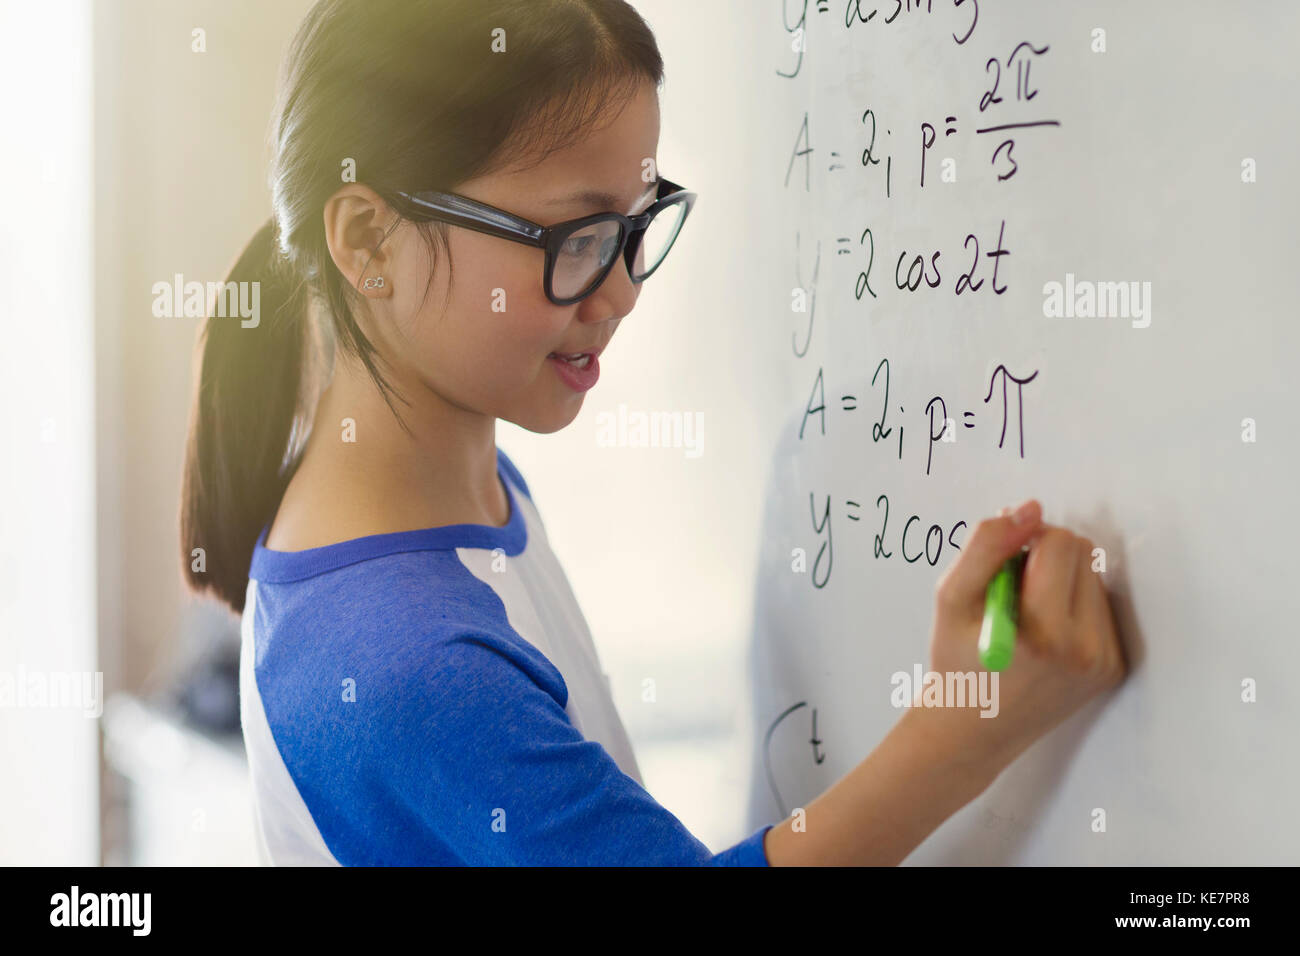 Portrait lächelnd, selbstbewusst Mädchen Schüler lösen Physik Gleichungen am Whiteboard im Klassenzimmer Stockfoto